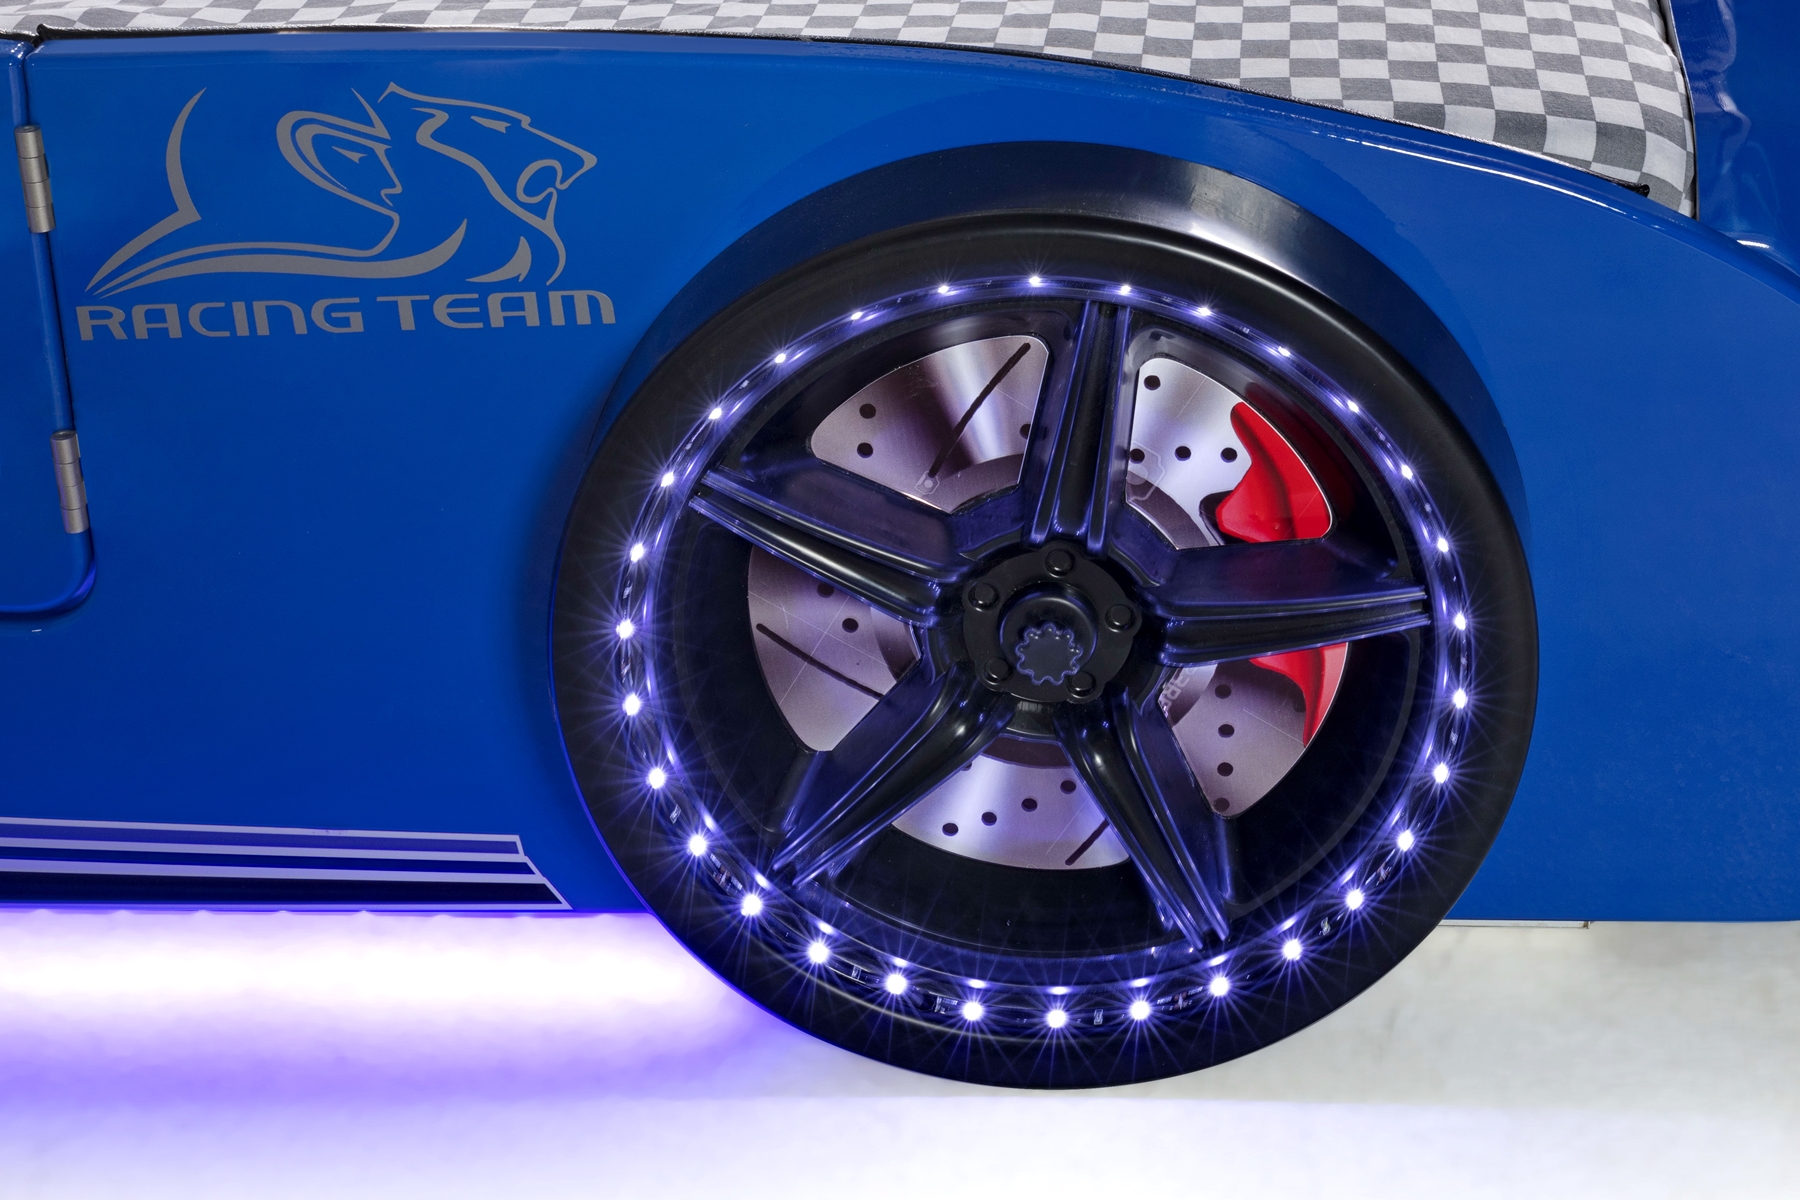 Autobettzimmer Must Rider Turbo 4-teilig in Weiß/Blau